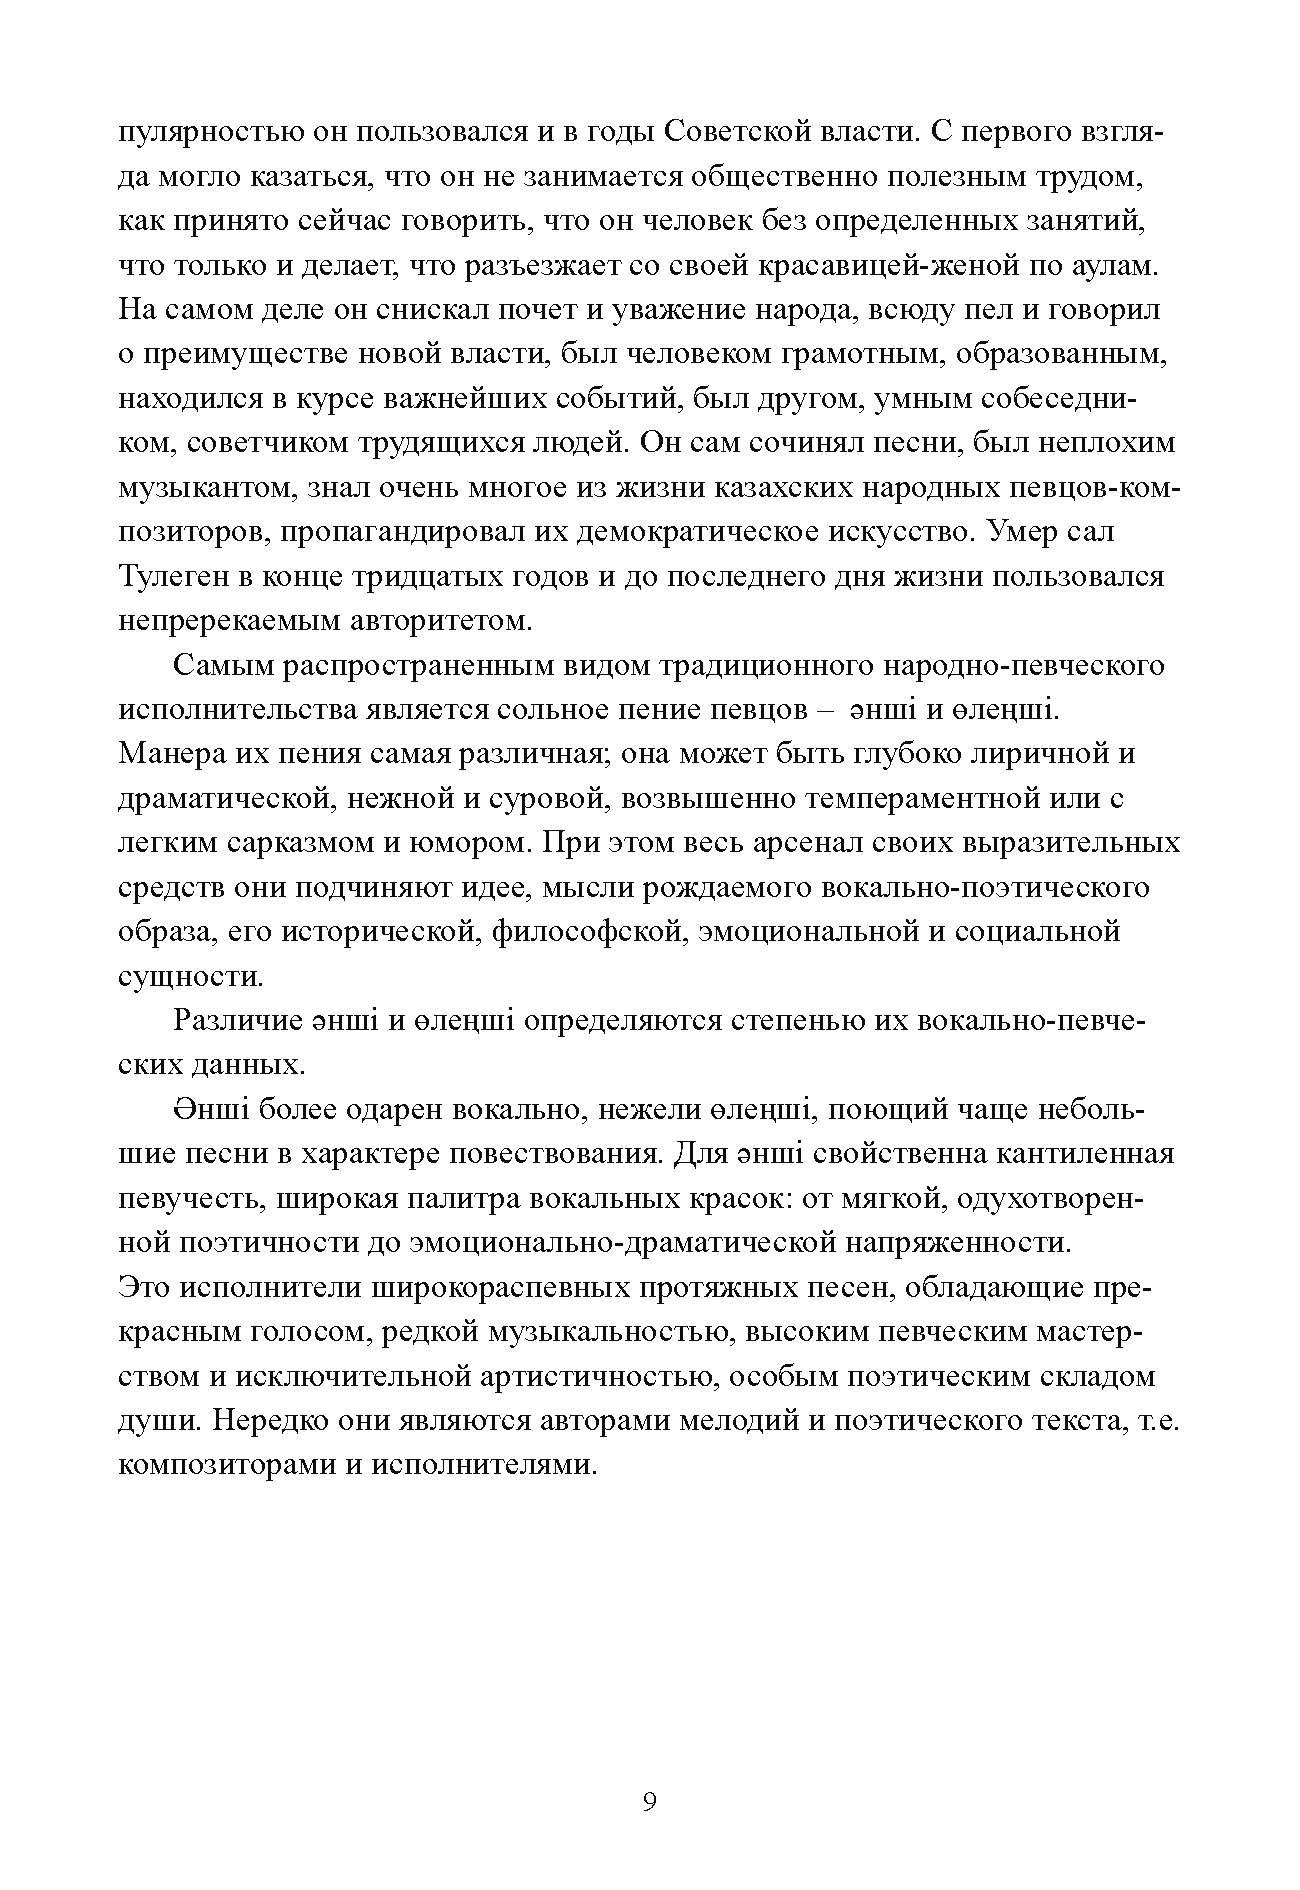 рабочая тетрадь по казахской музыкальной литературе для I года обучения